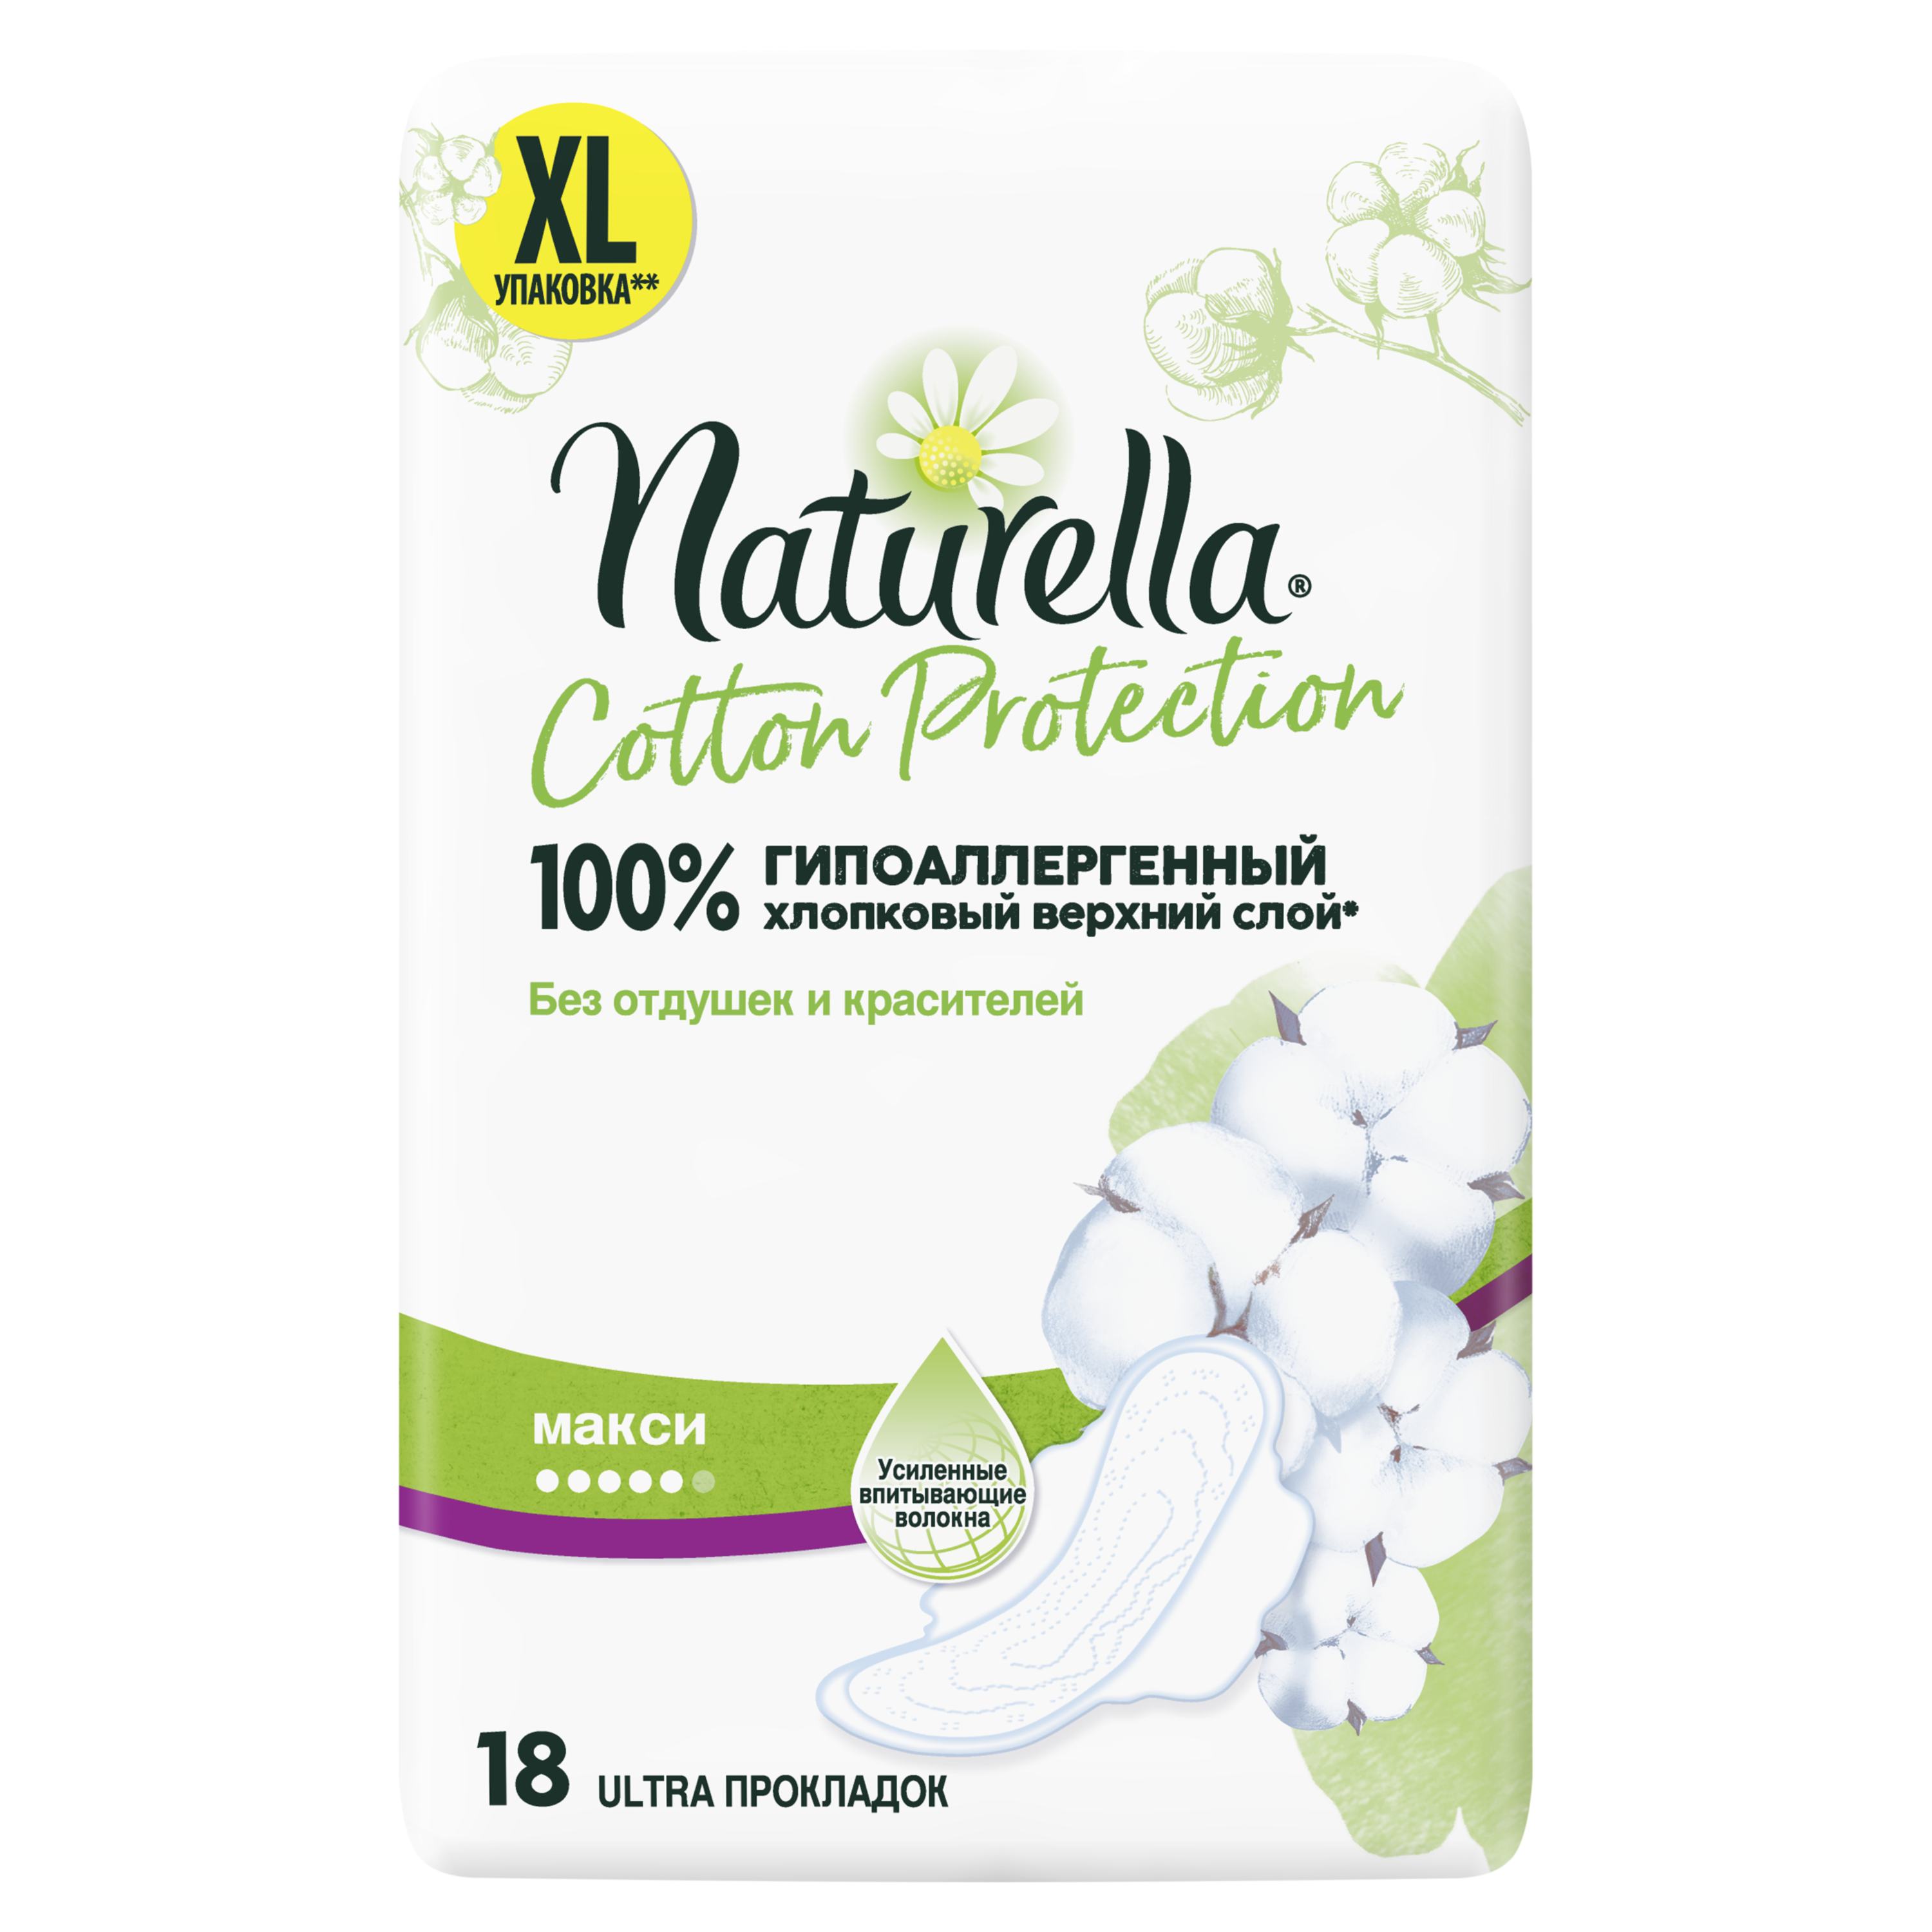 Прокладки Гигиенические Naturella Cotton Protection Maxi 18